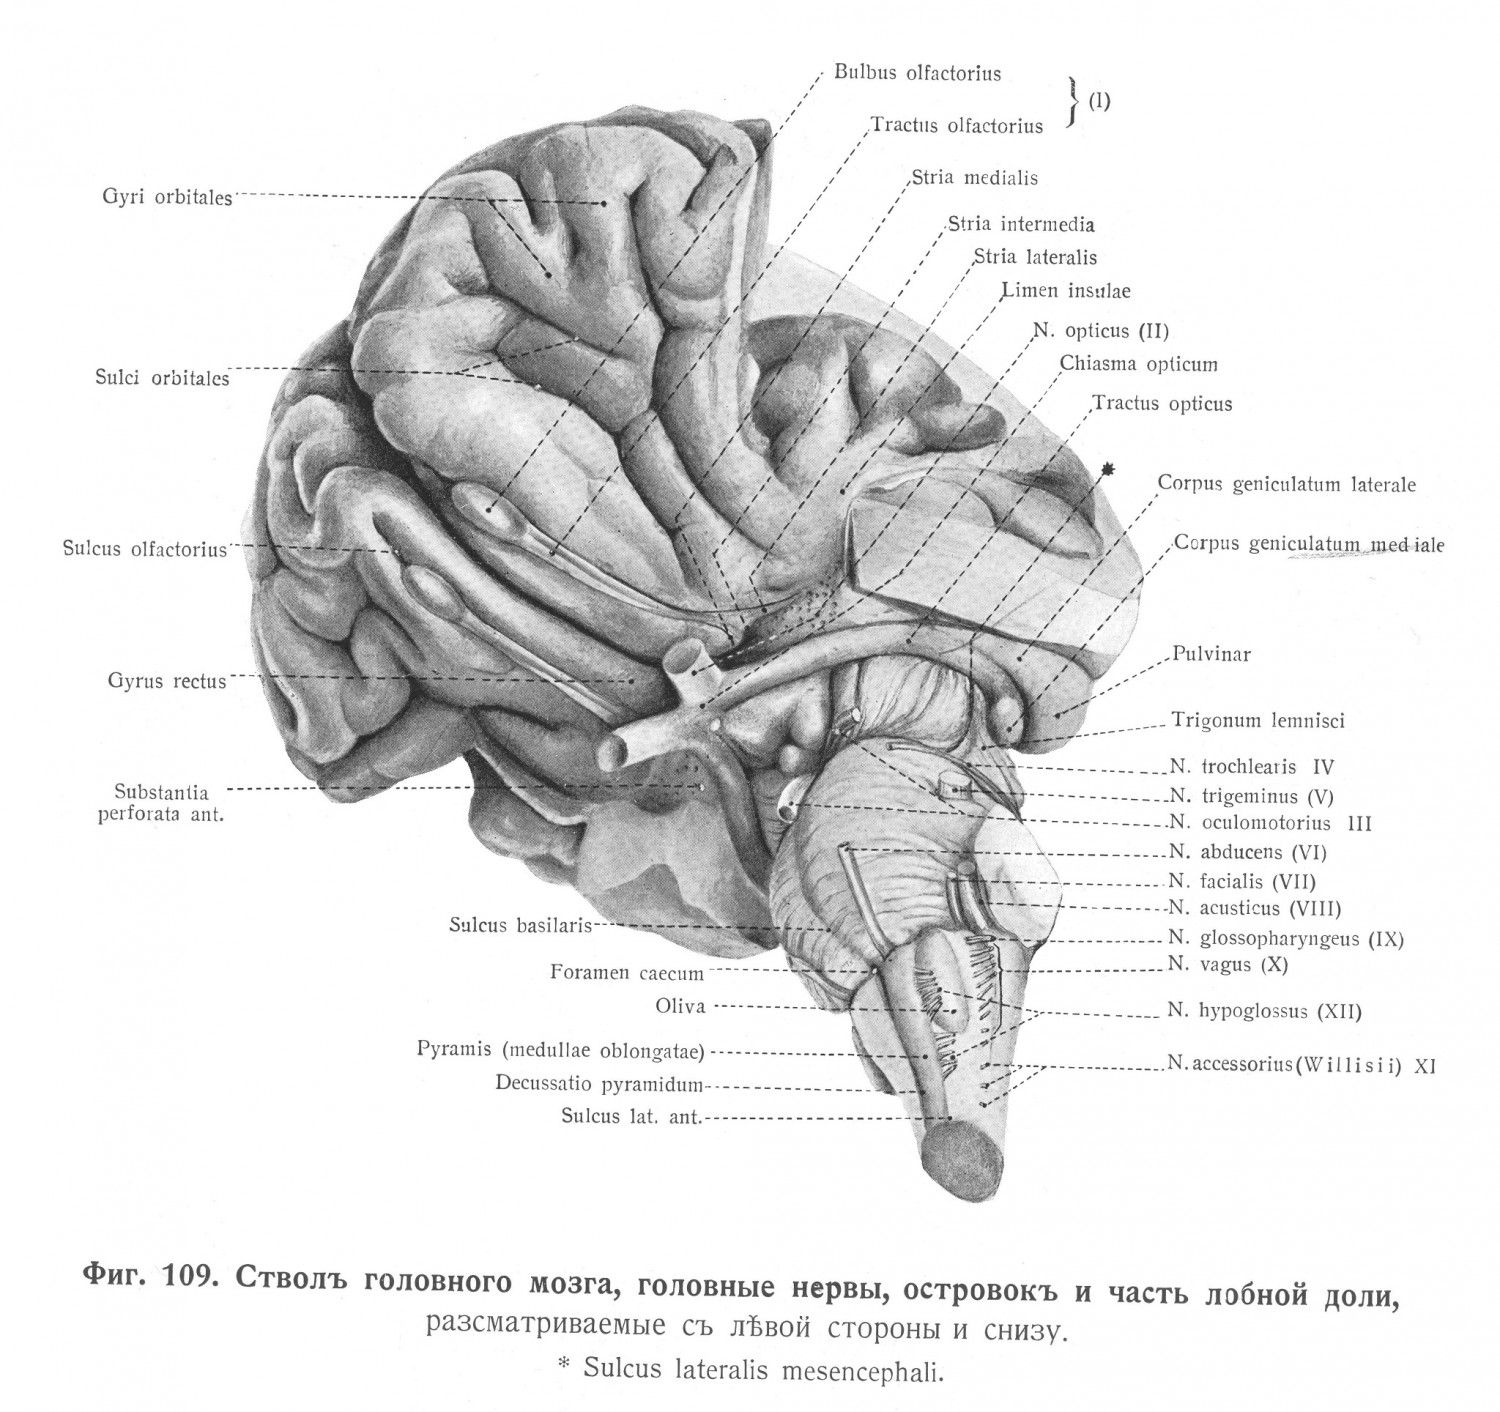 Ствол головного мозга, головные нервы, островок и часть лобной доли